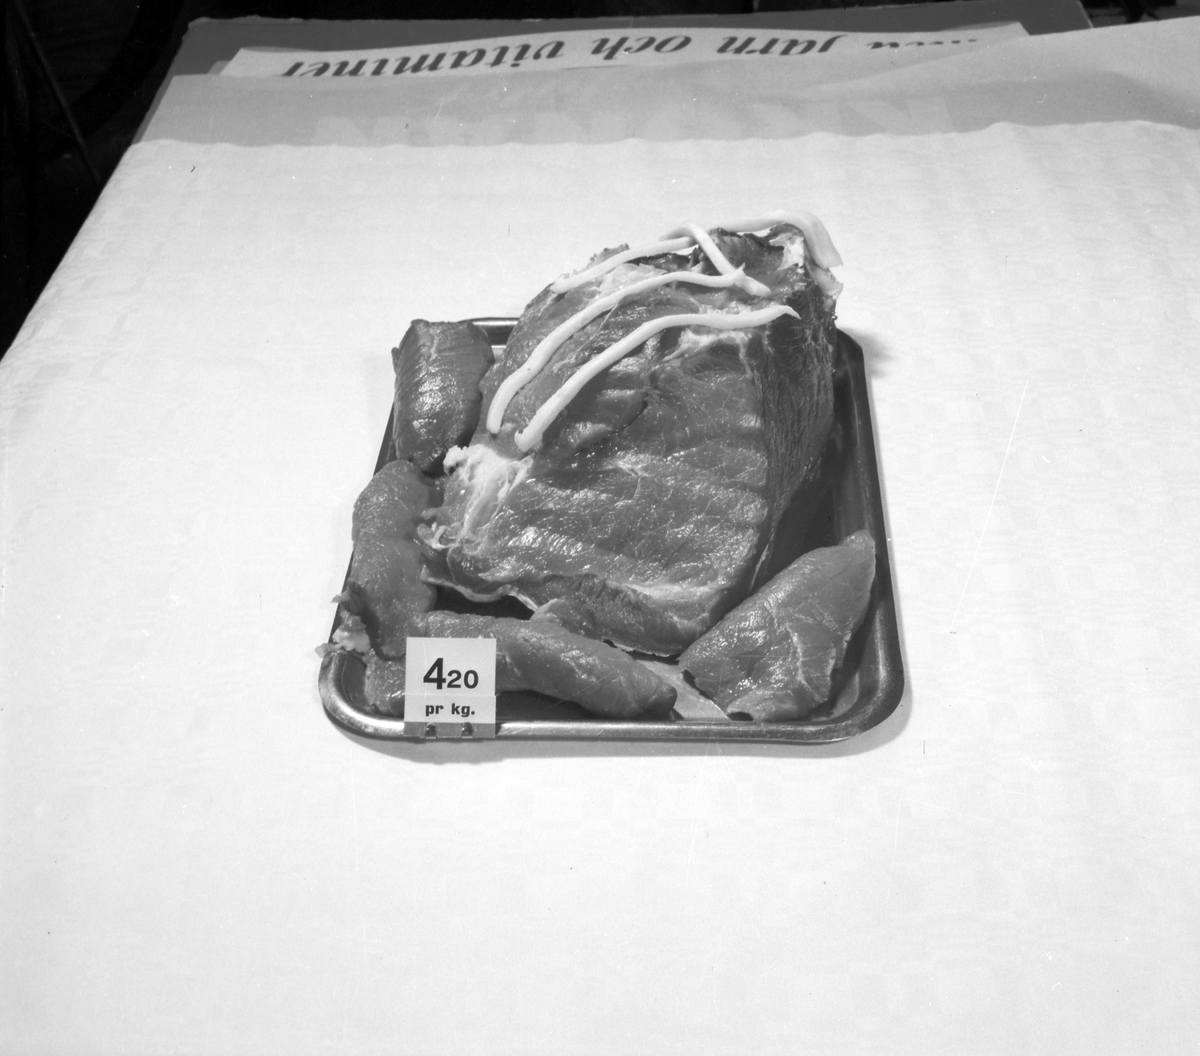 Konsum Alfa Varuhuset. Charkuteri. Uppläggningar på fat. December 1944


